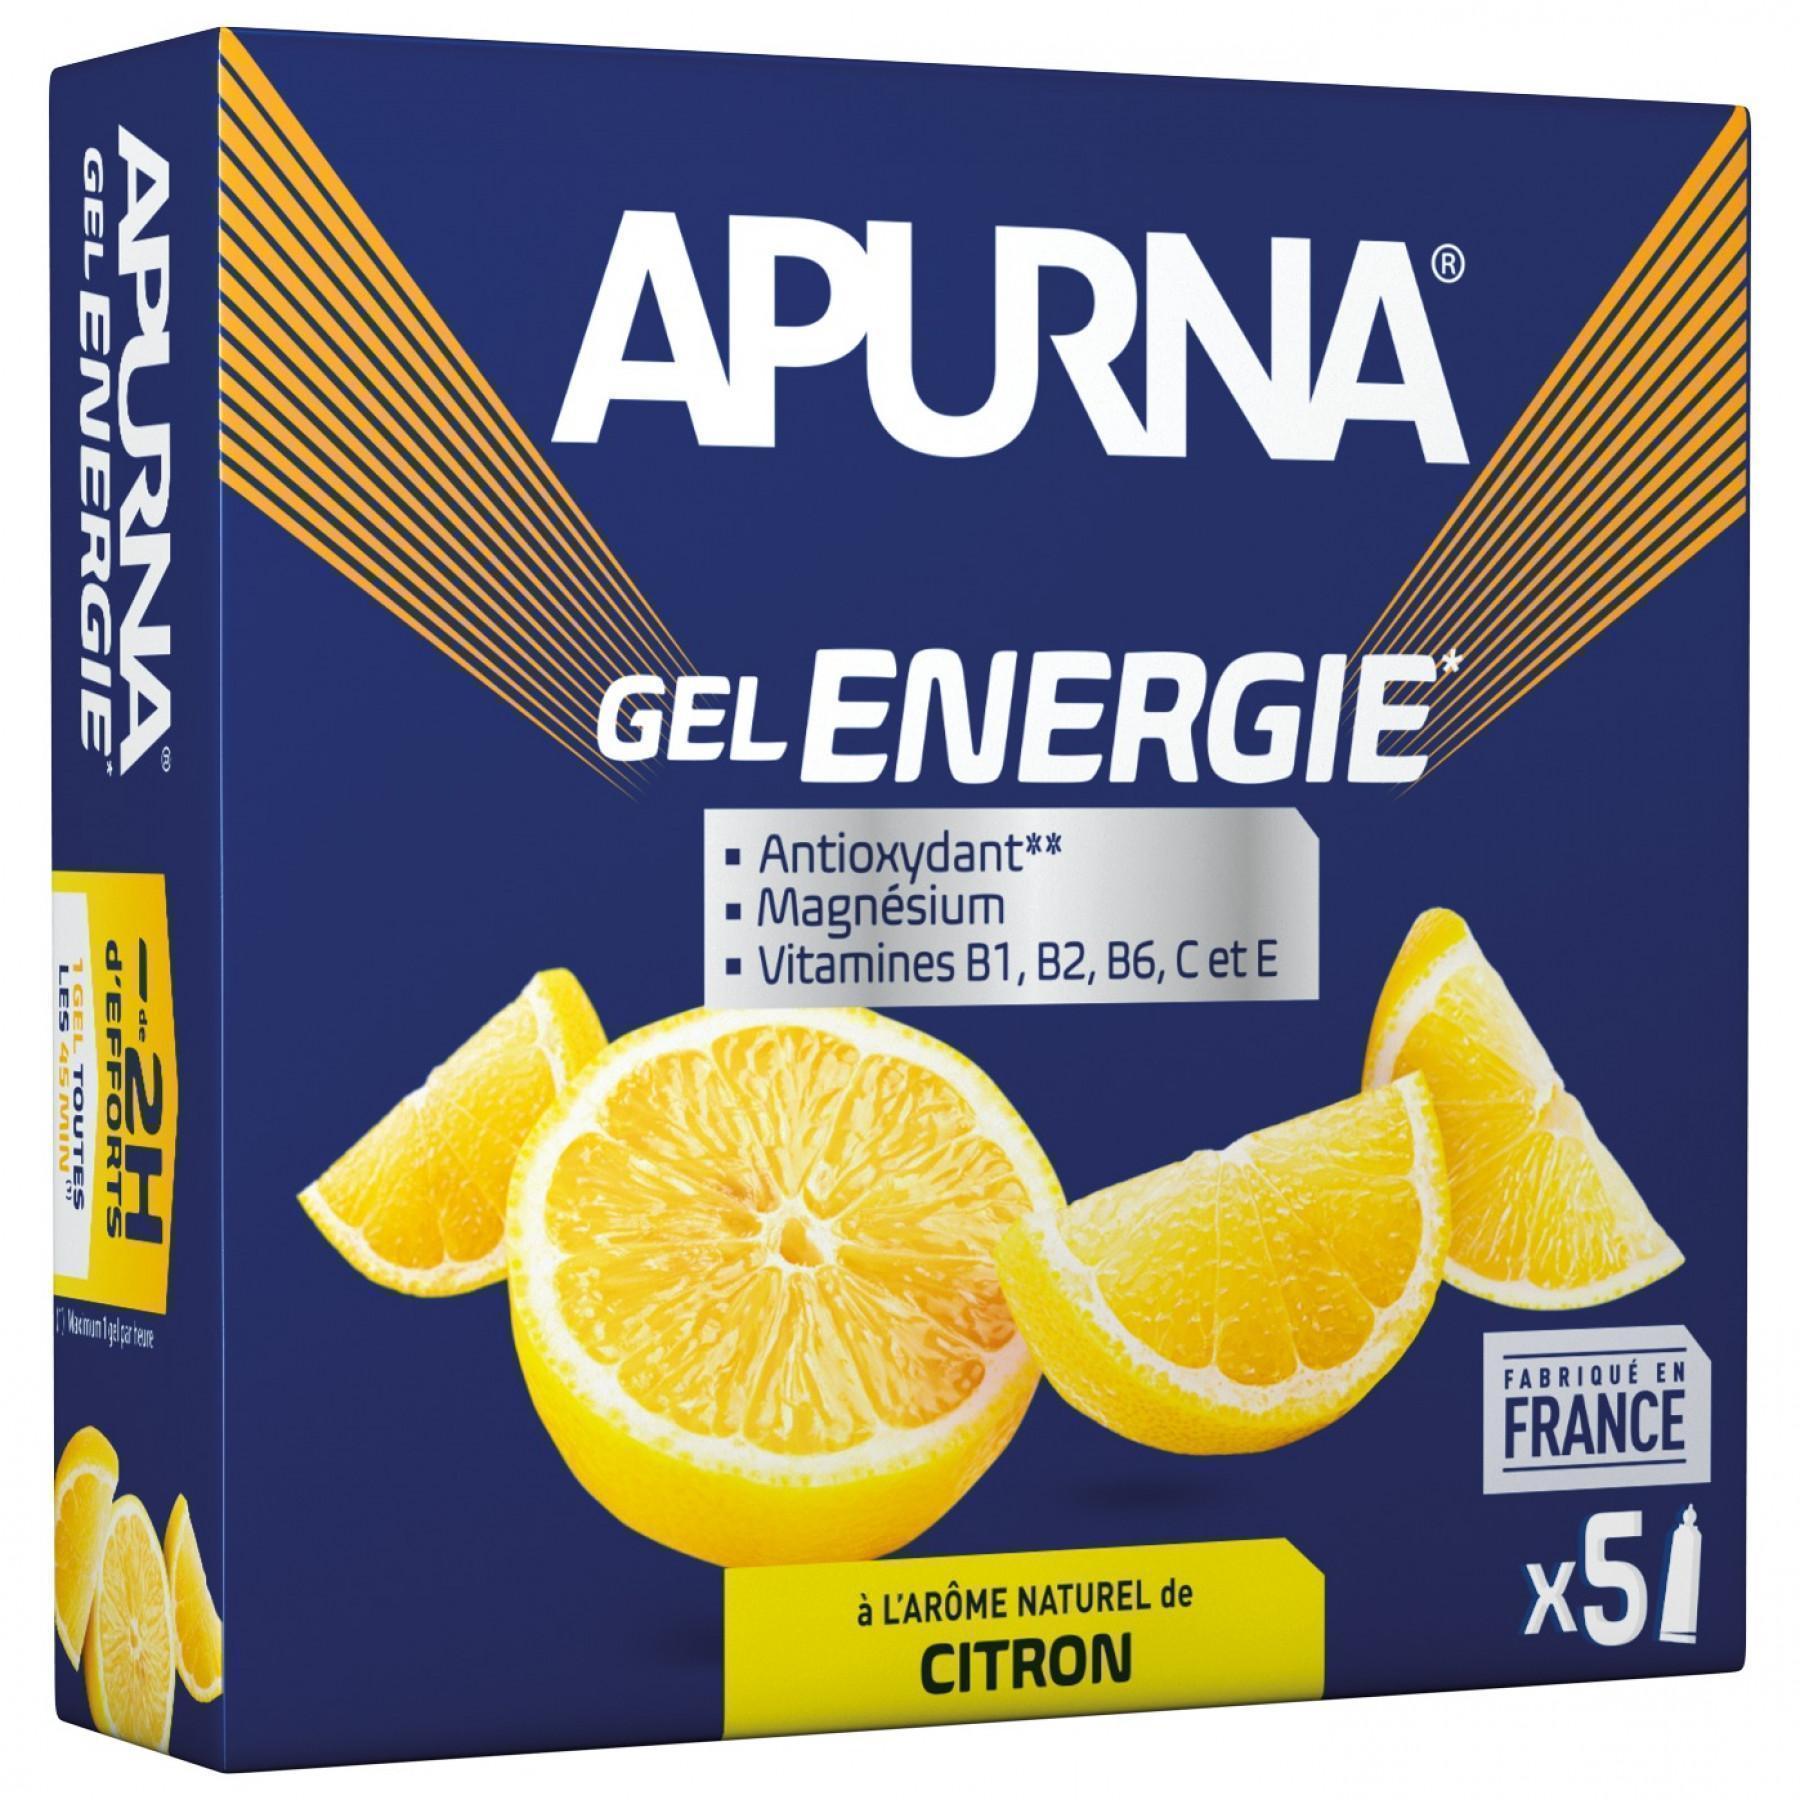 Pack of 5 gels Apurna Energie Citron - 35g